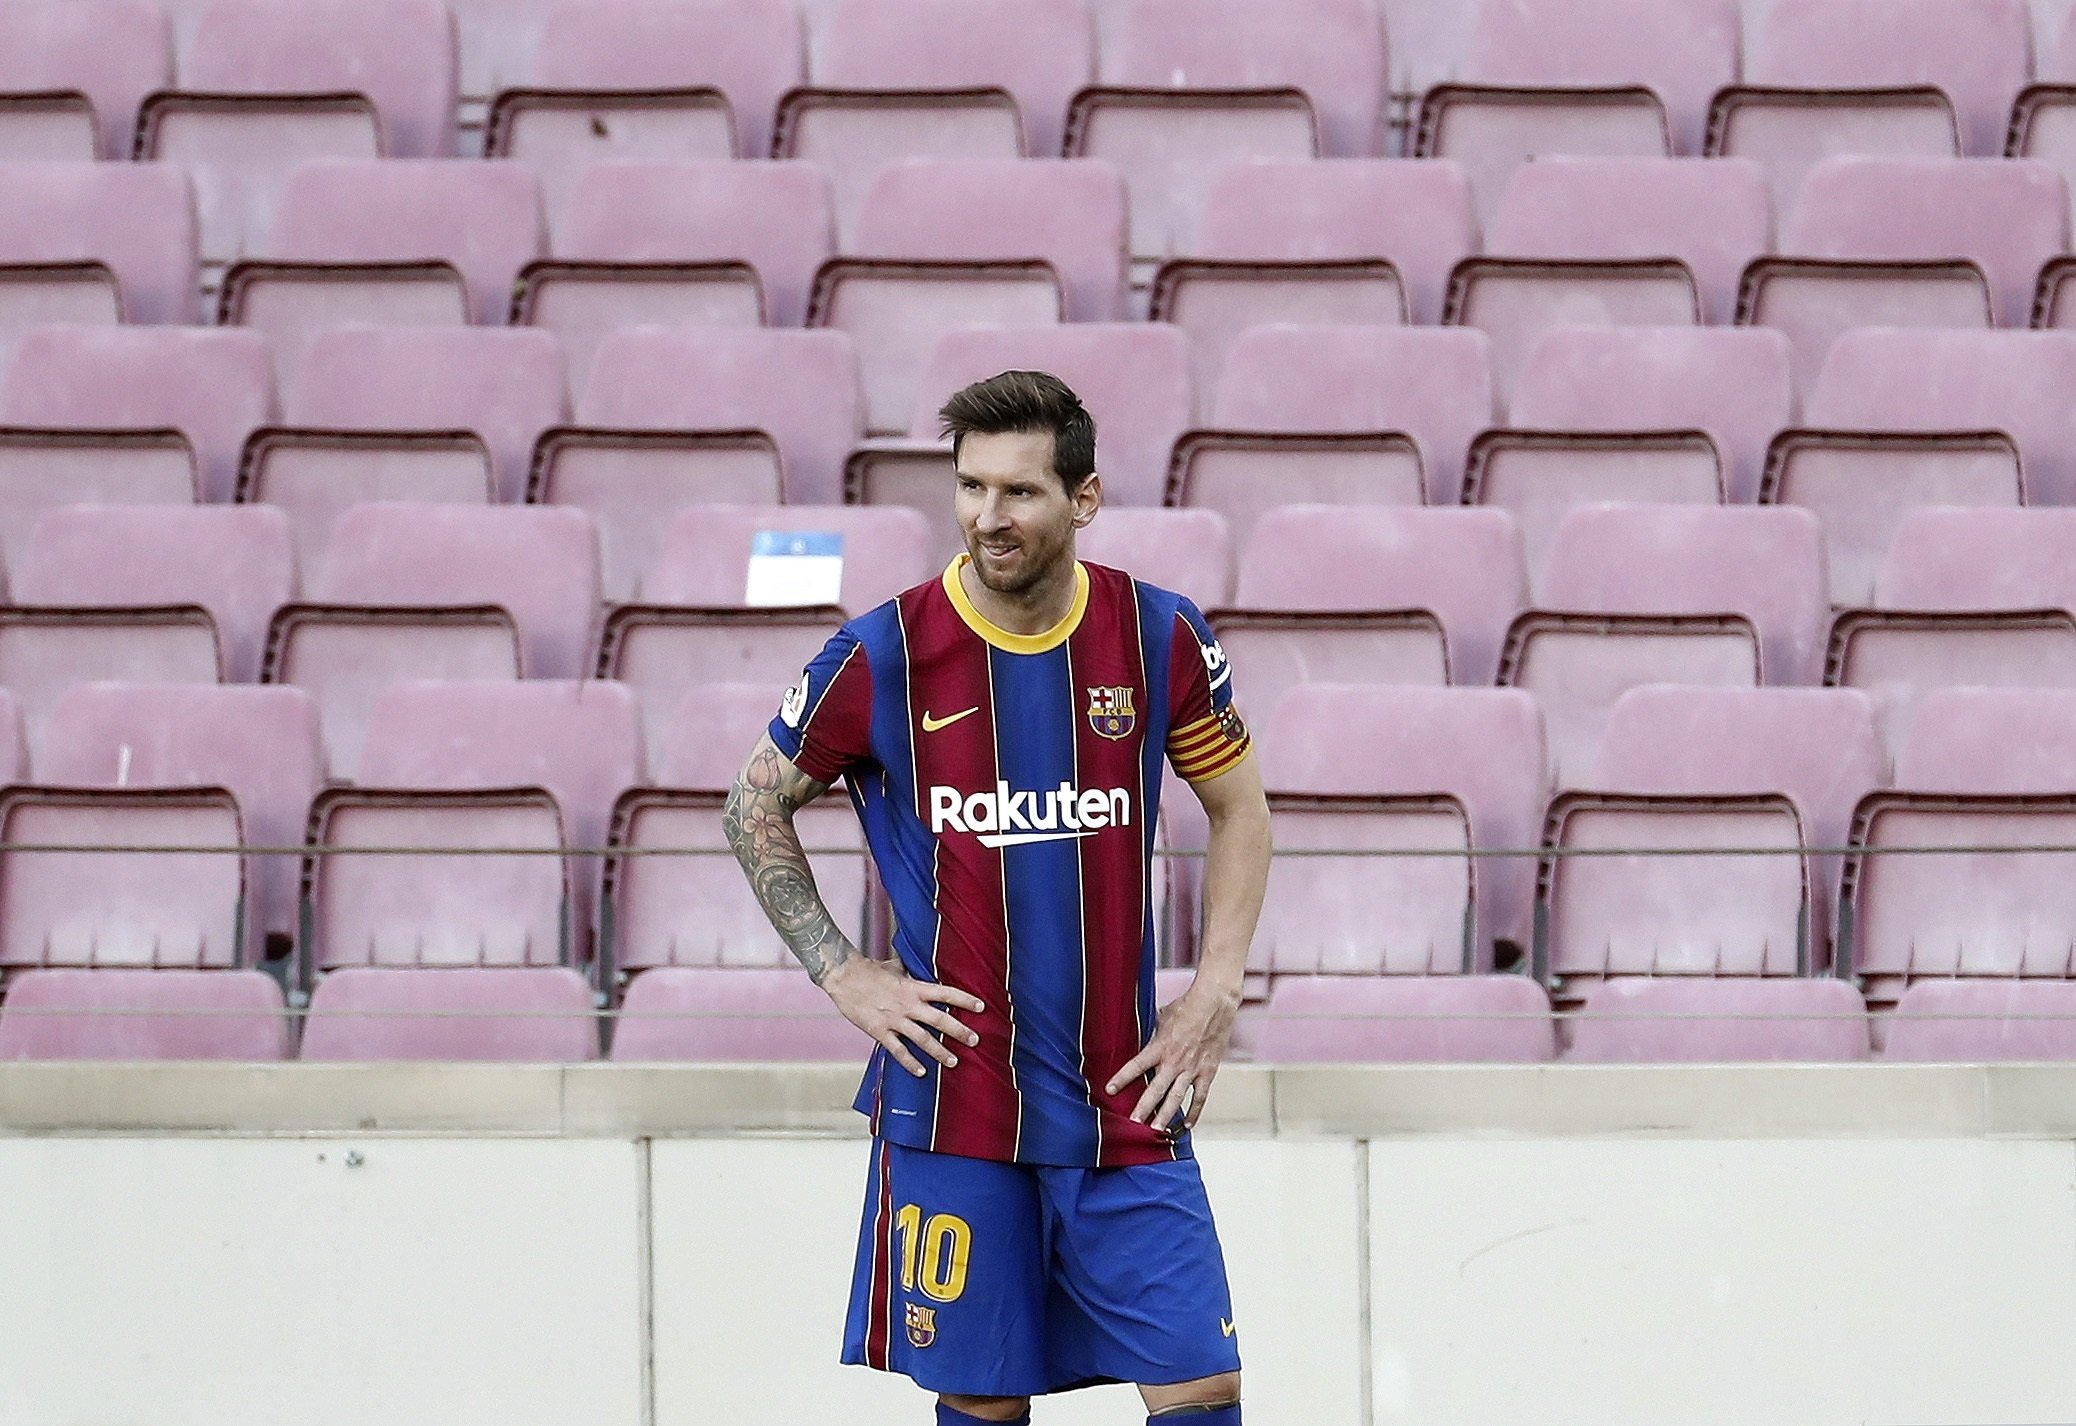 La incorporación de Pochettino podría facilitar la llegada de Messi al PSG